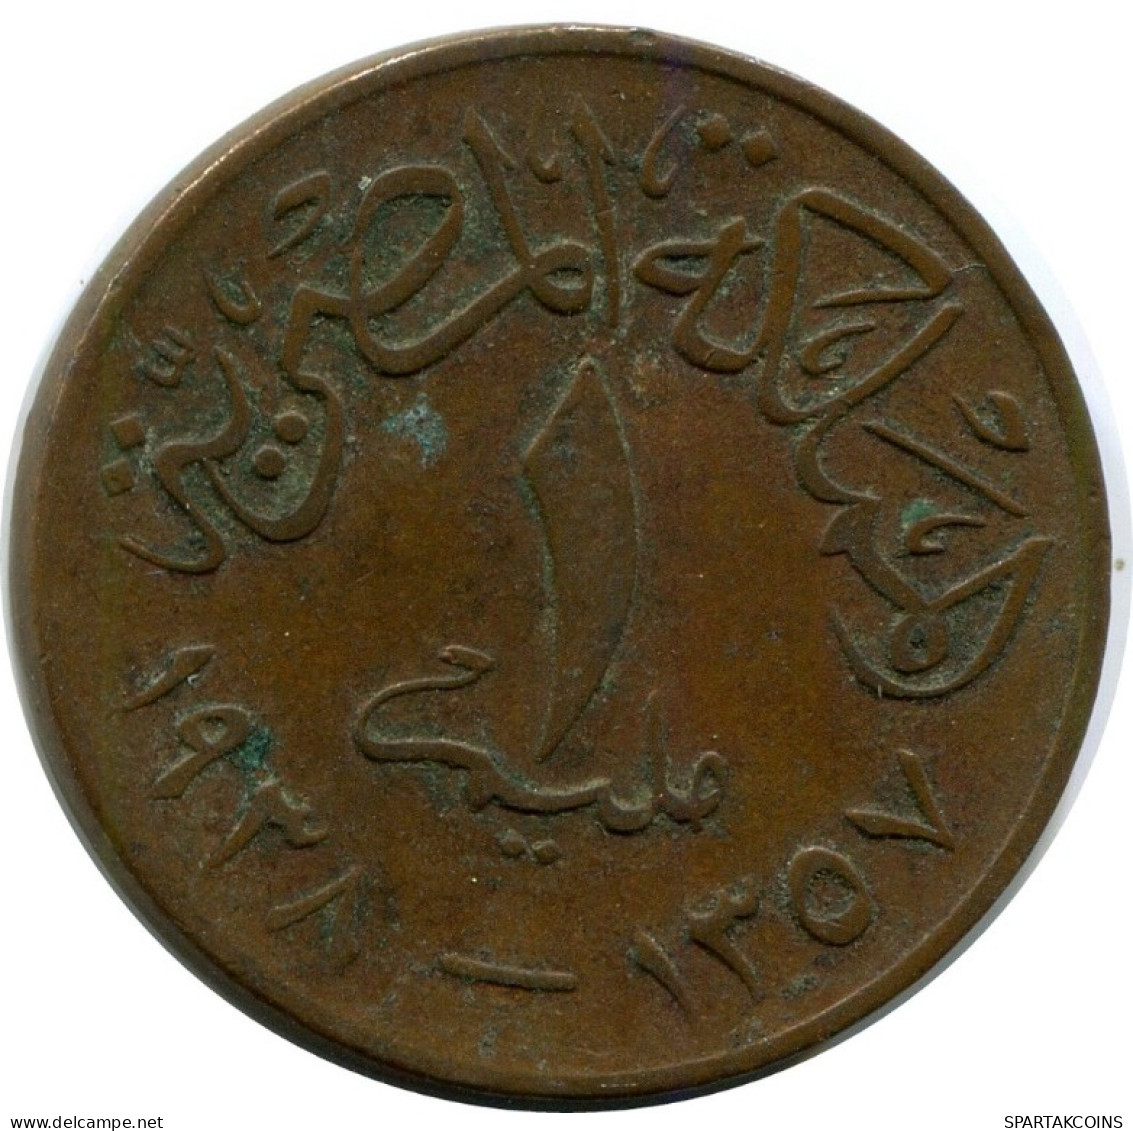 1 MILLIEME 1938 ÄGYPTEN EGYPT Islamisch Münze #AK088.D.A - Egipto